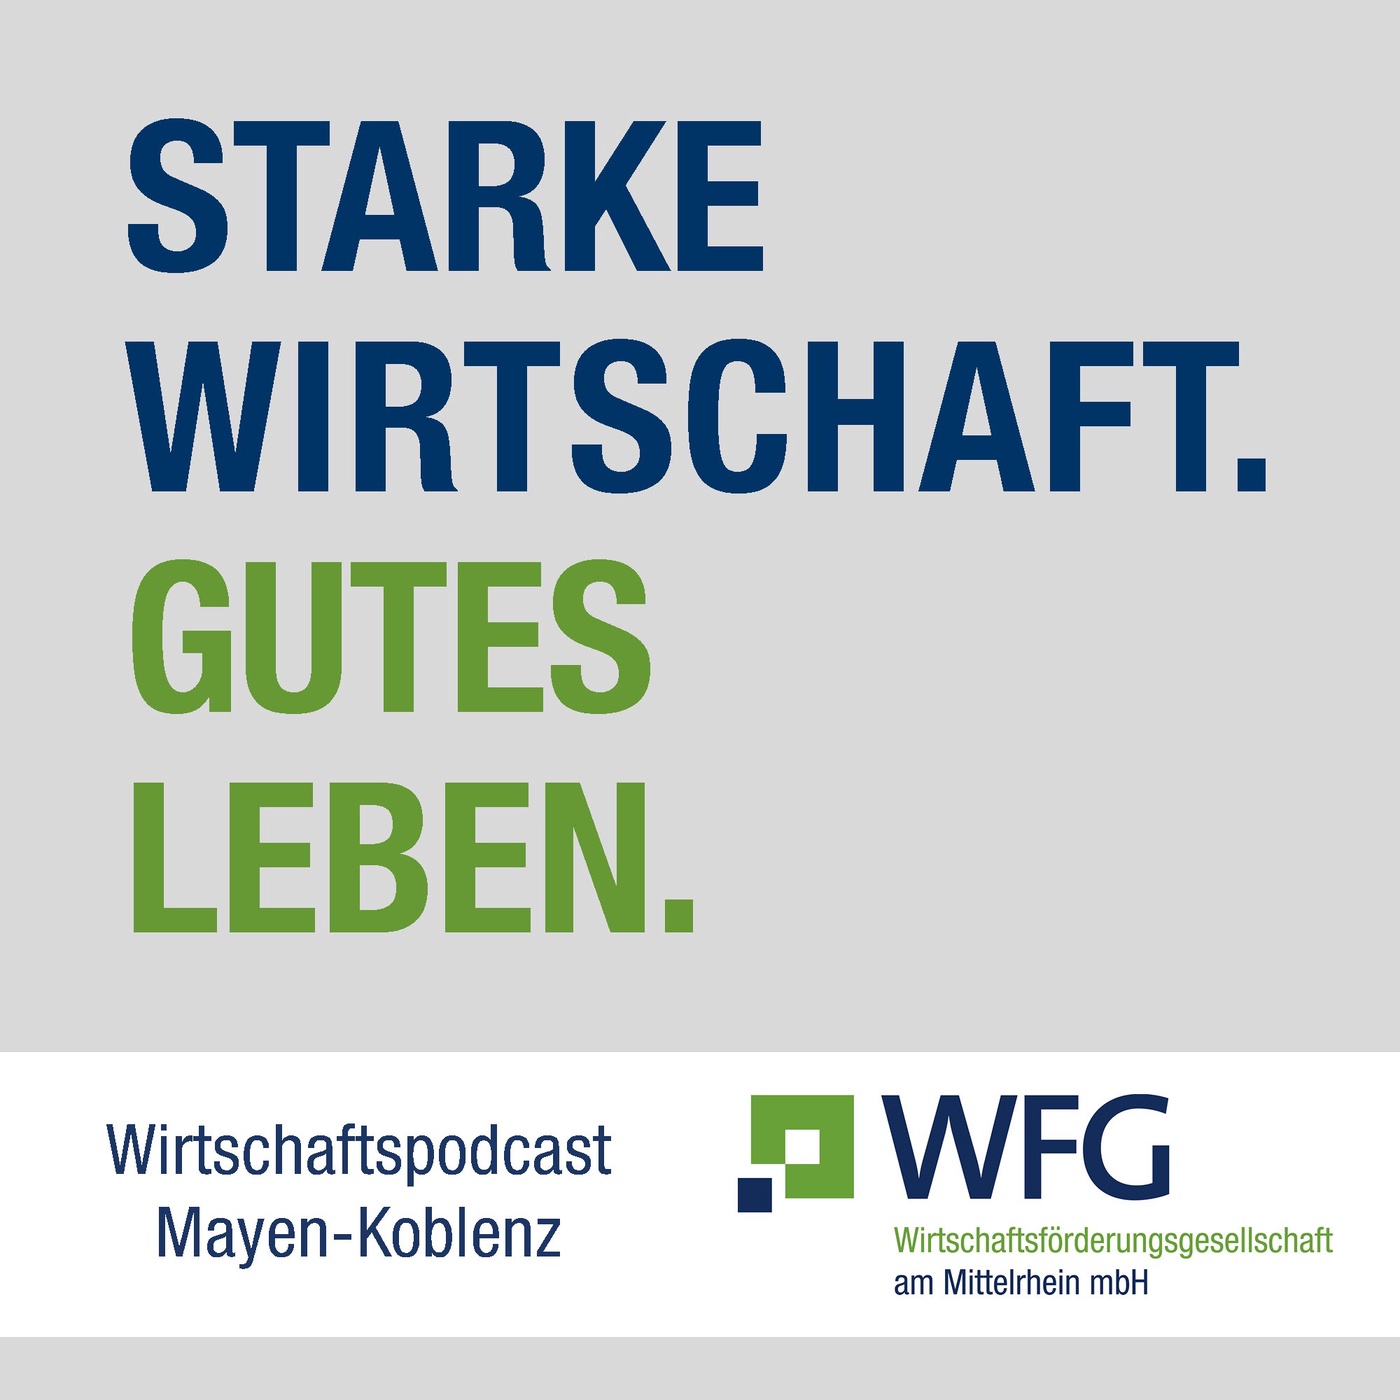 Starke Wirtschaft. Gutes Leben. – Wirtschaftspodcast Mayen Koblenz